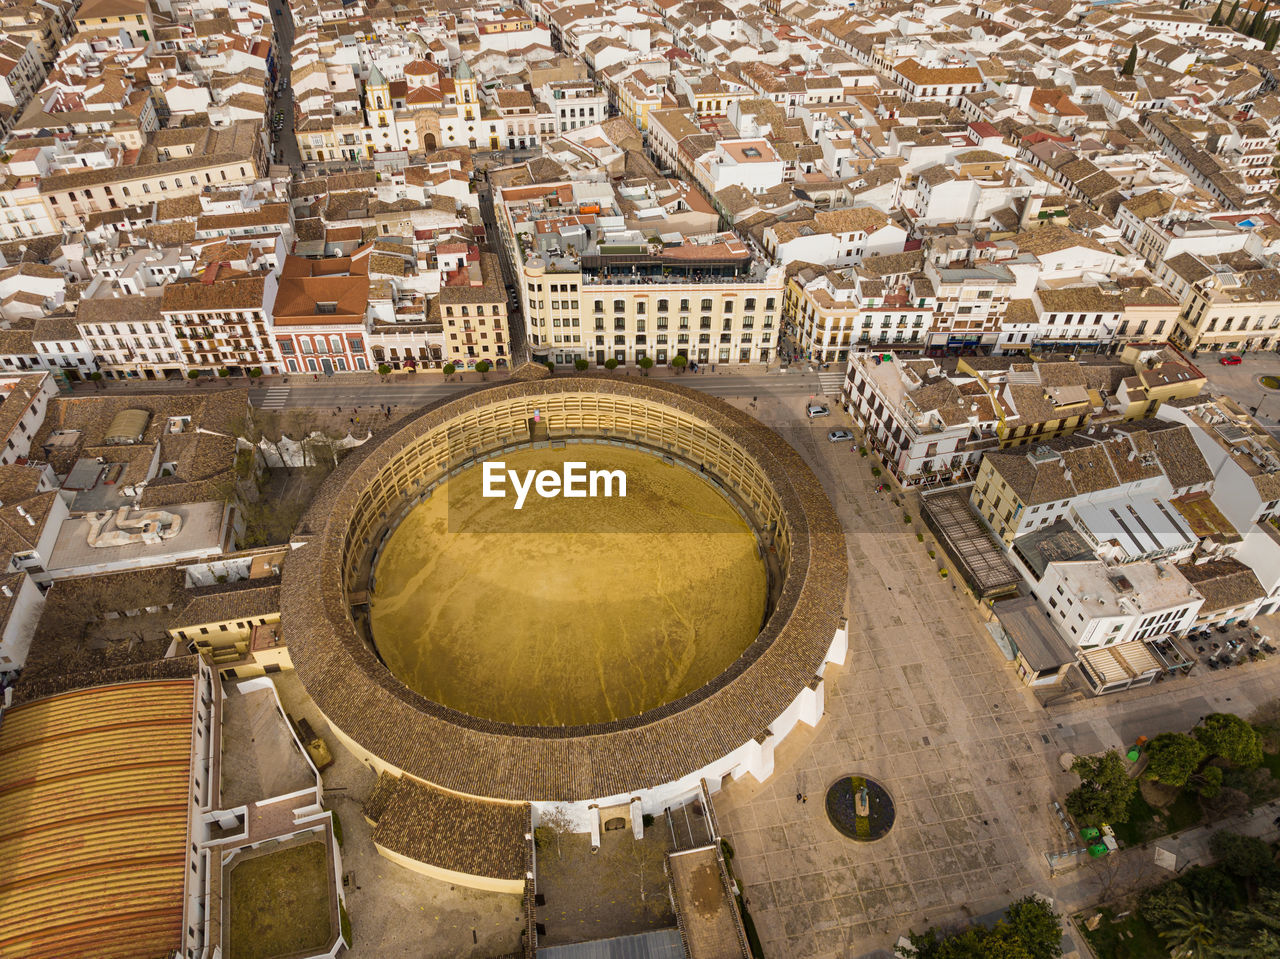 Aerial view of the plaza de toros de ronda, spain